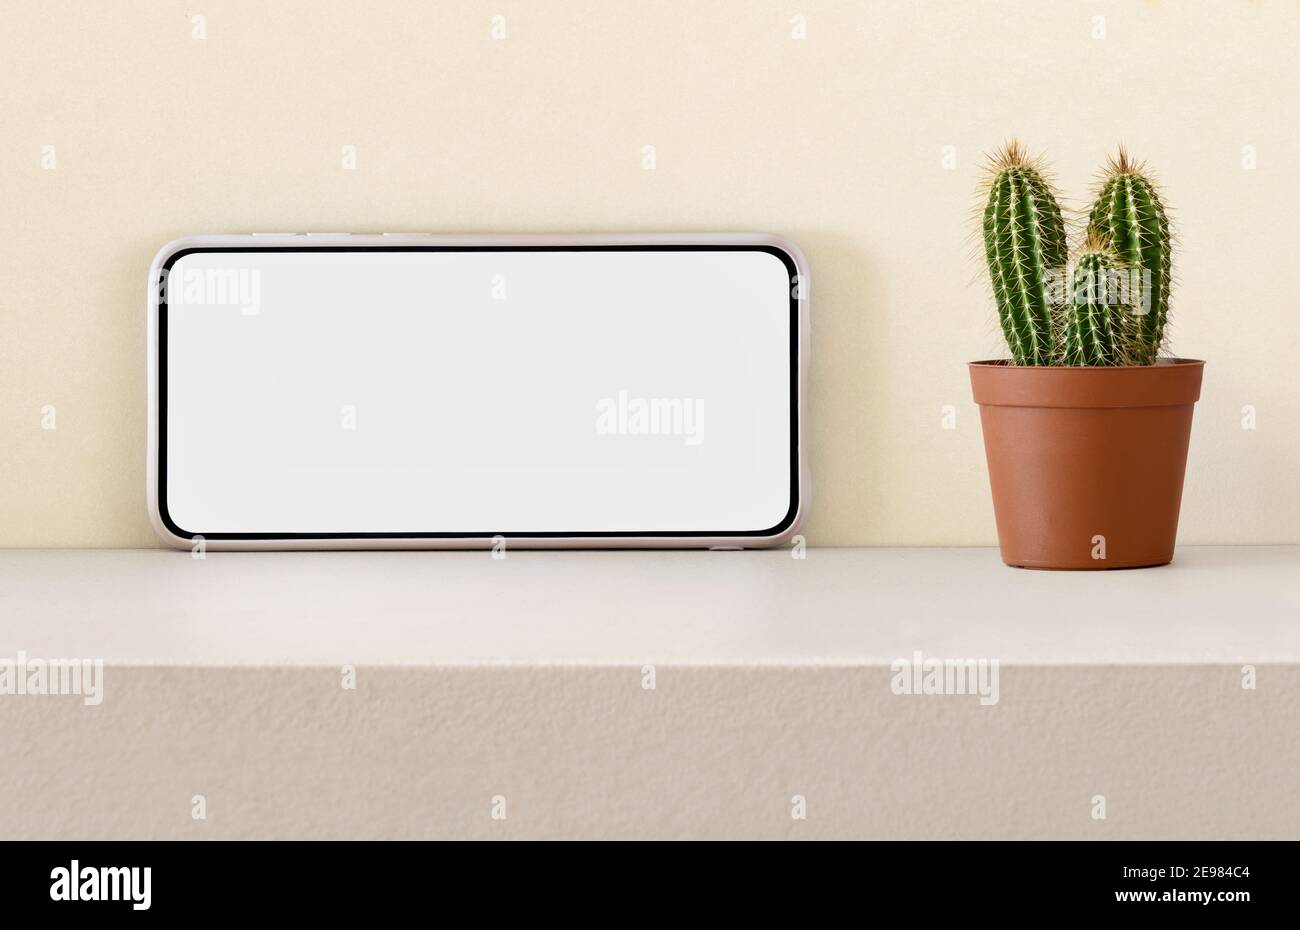 Telefono cellulare moderno con schermo bianco posto vicino in vaso pianta di cactus su scaffale contro parete leggera Foto Stock